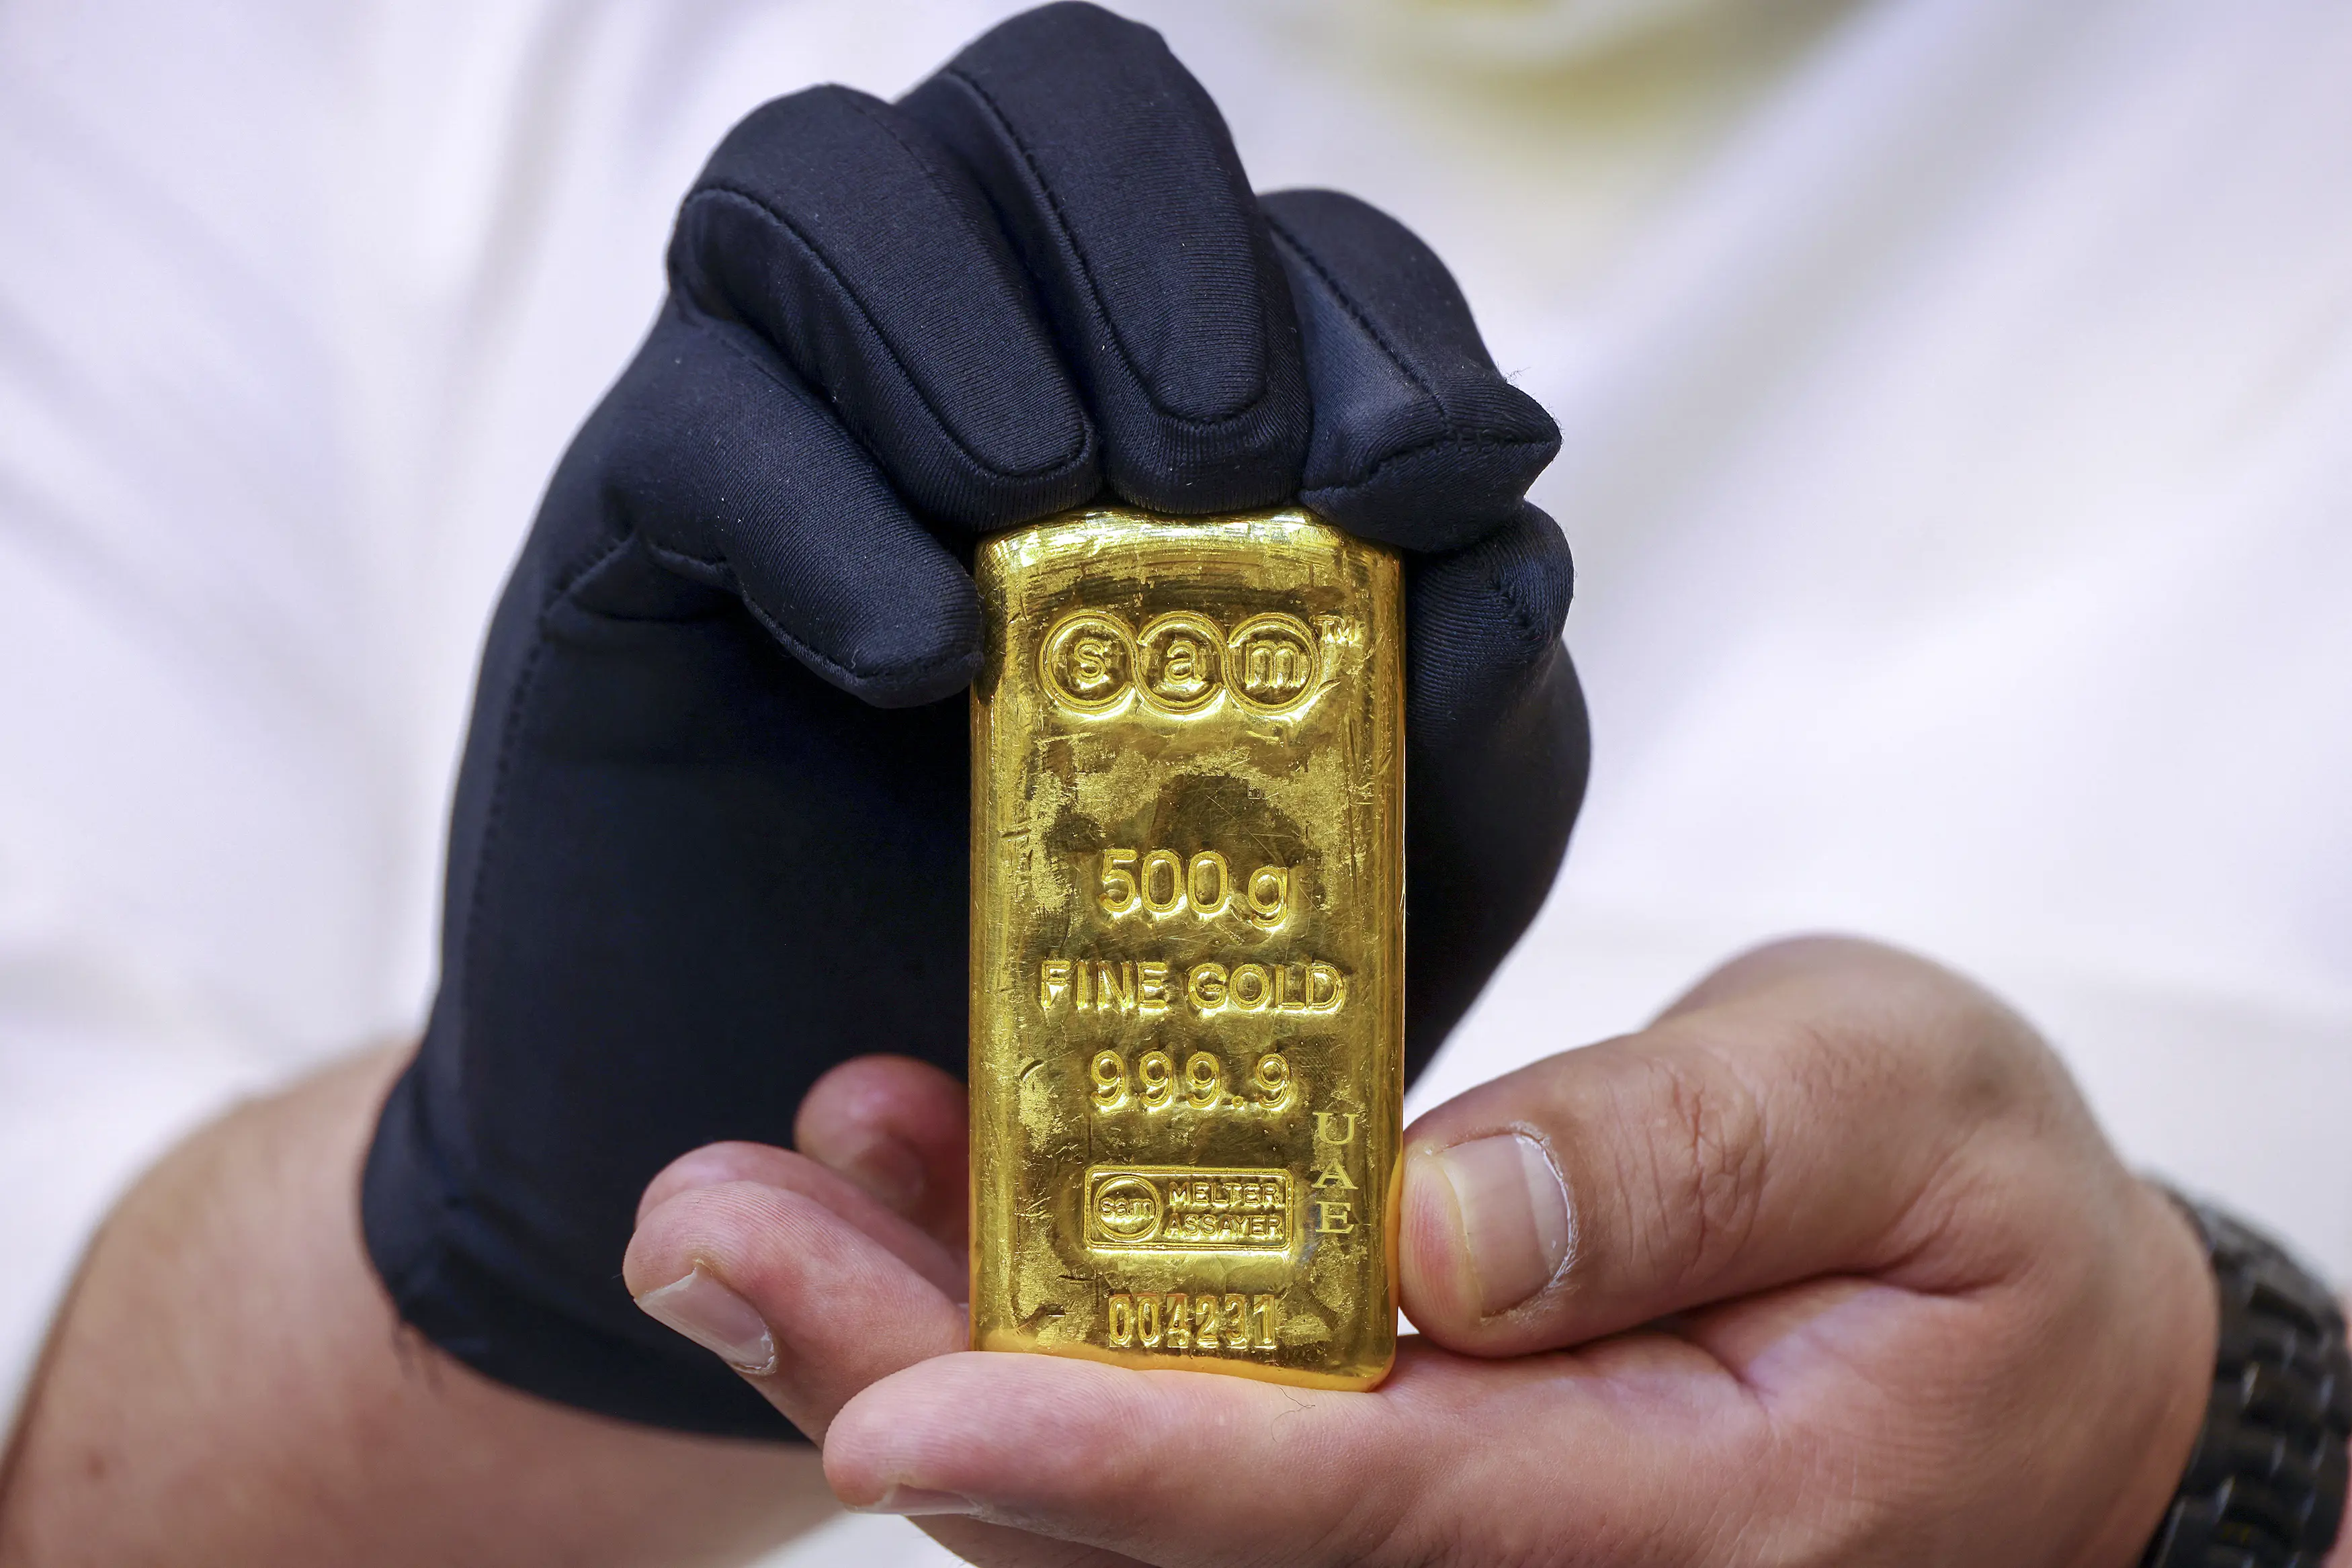 بعد الارتفاعات الجديدة.. هل تُكرر أسعار الذهب في مصر مستويات ما قبل "تعويم الجنيه"؟